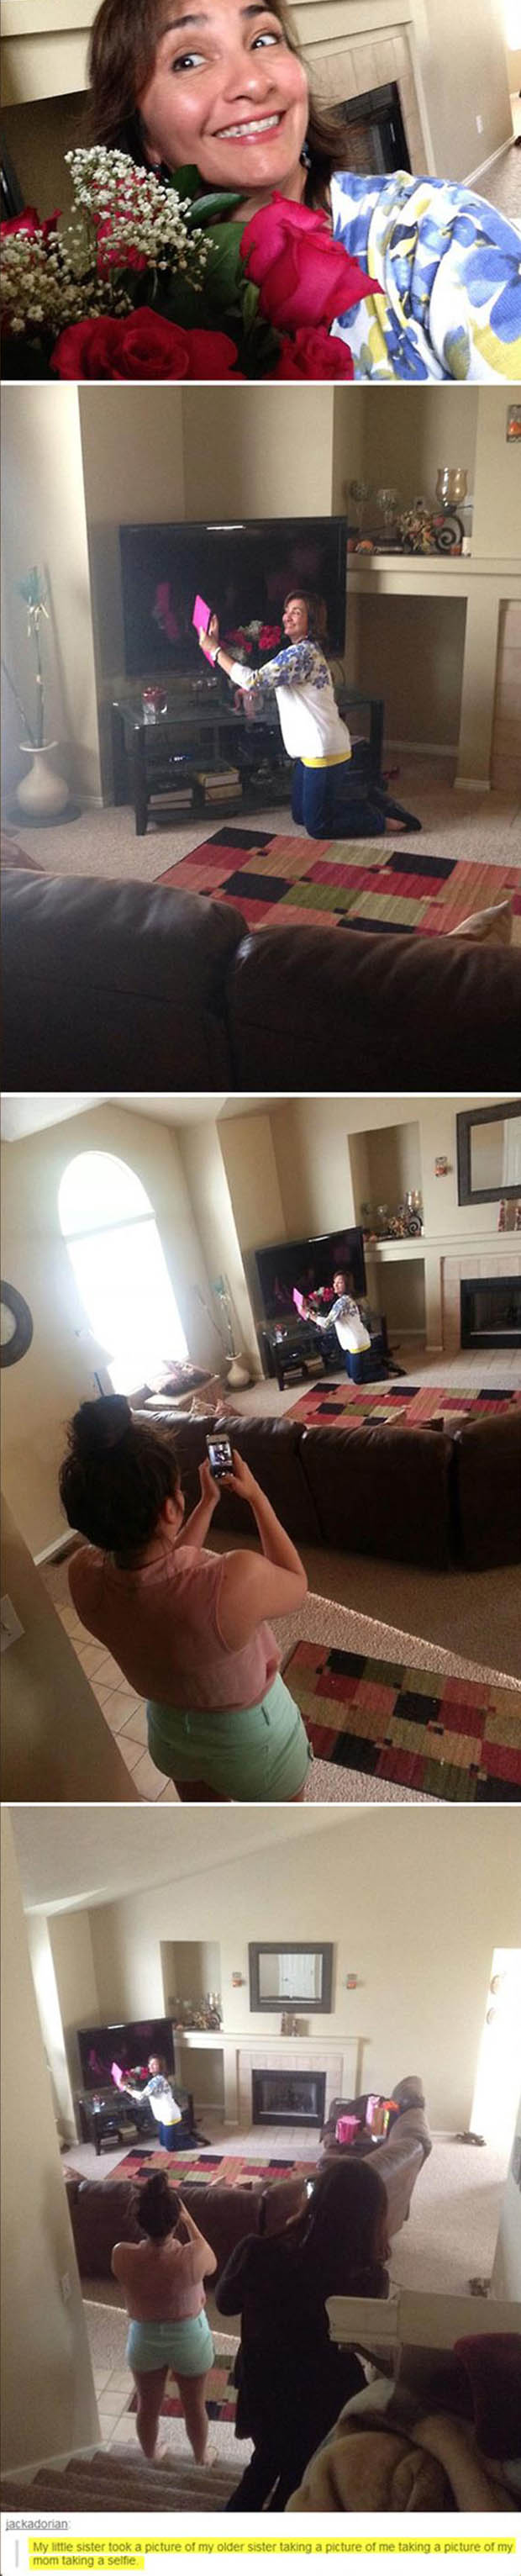 mom taking a selfie